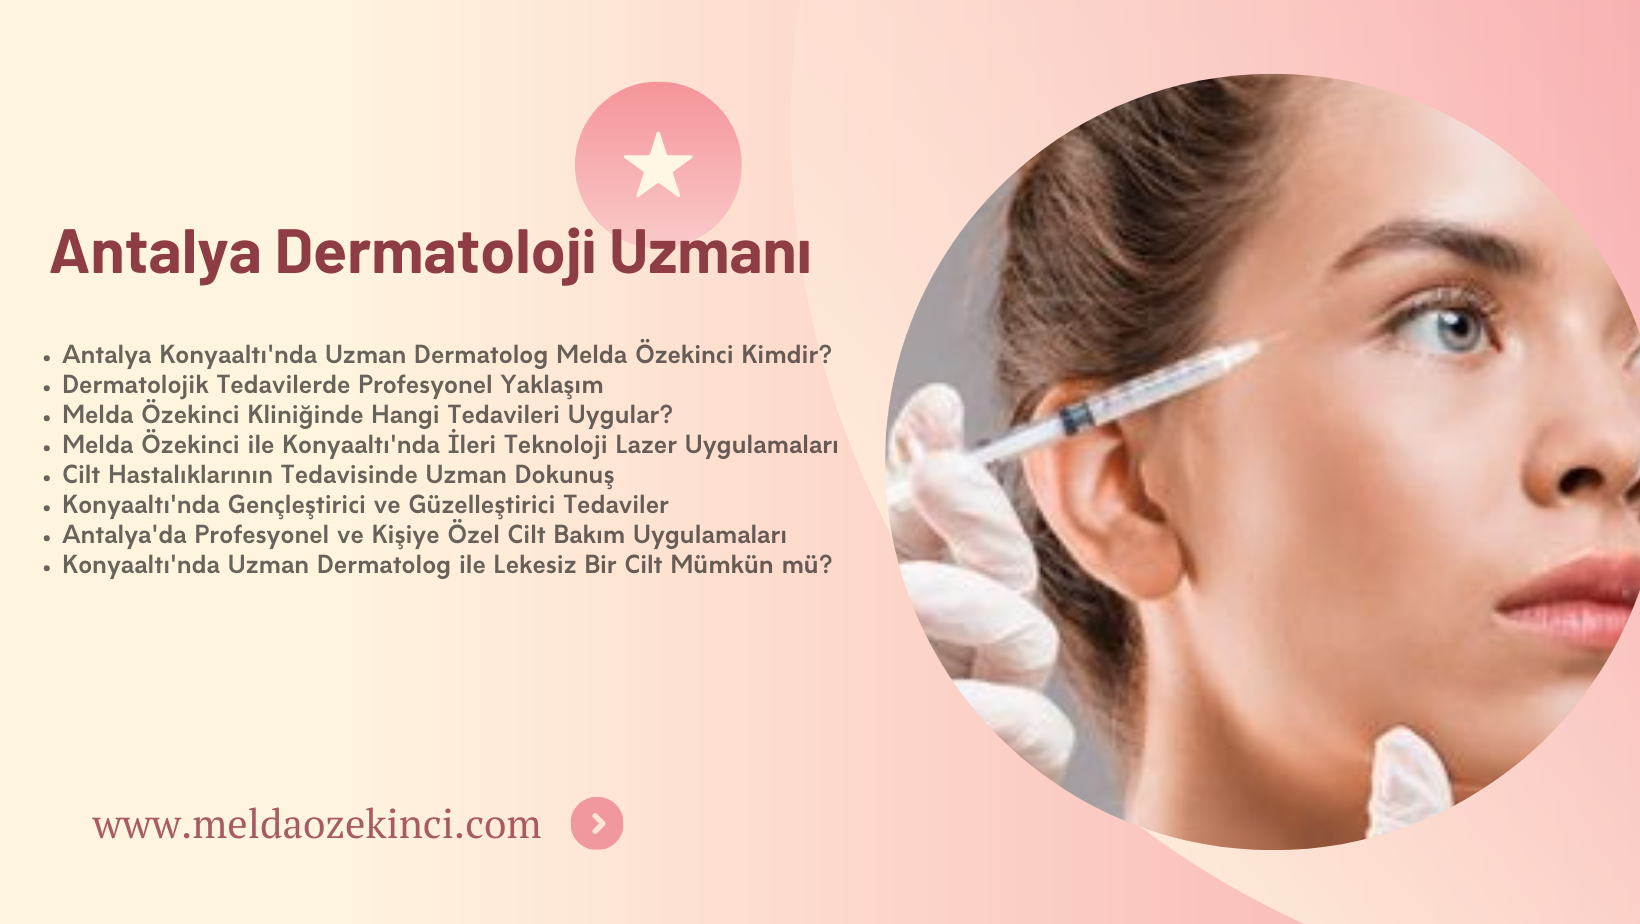 Antalya Dermatoloji Uzmanı